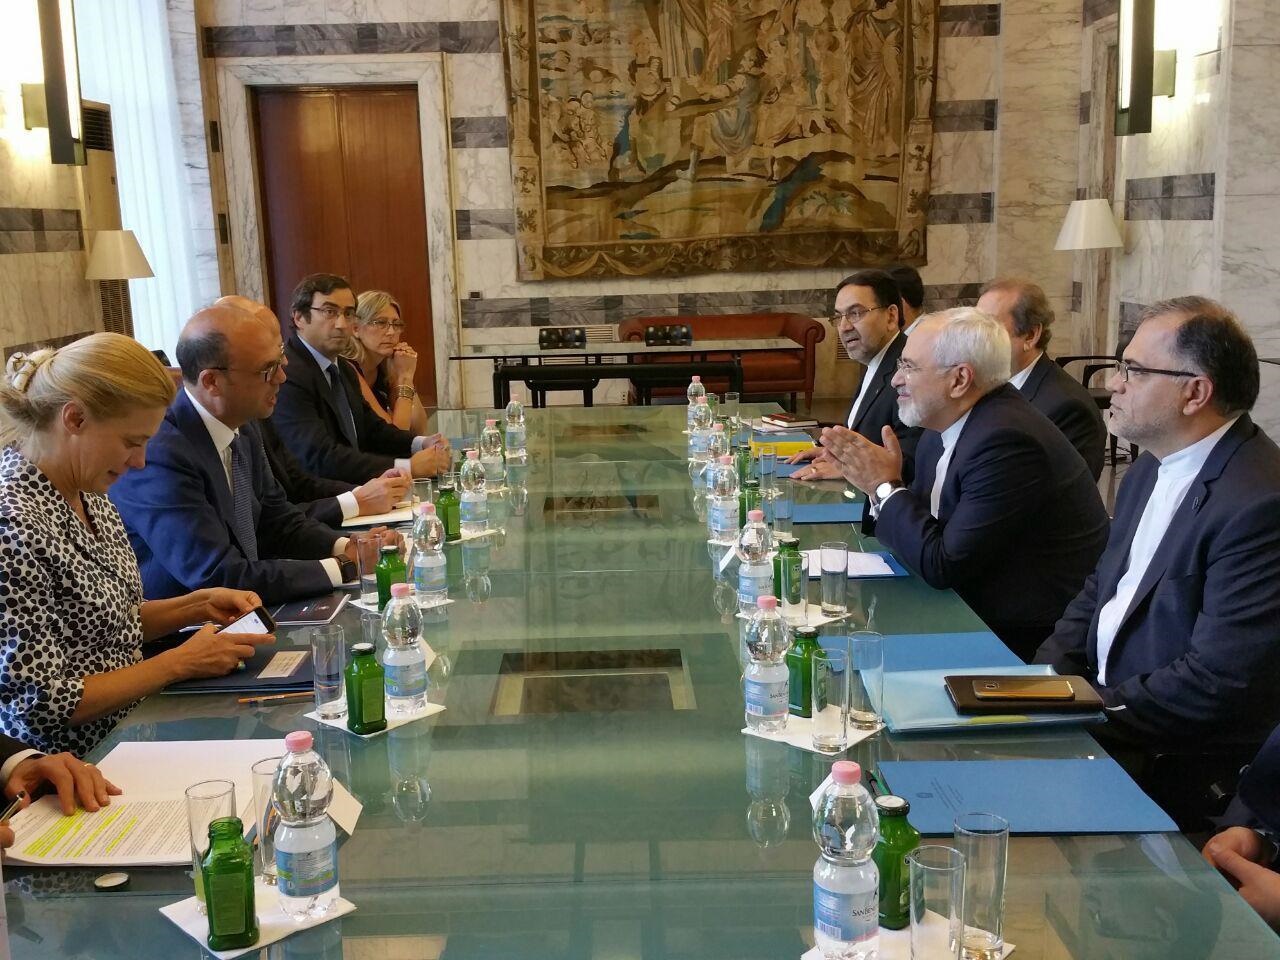 وزیر خارجه ایتالیا در دیدار با ظریف:رم به دنبال توسعه مناسبات دو جانبه خود با تهران است